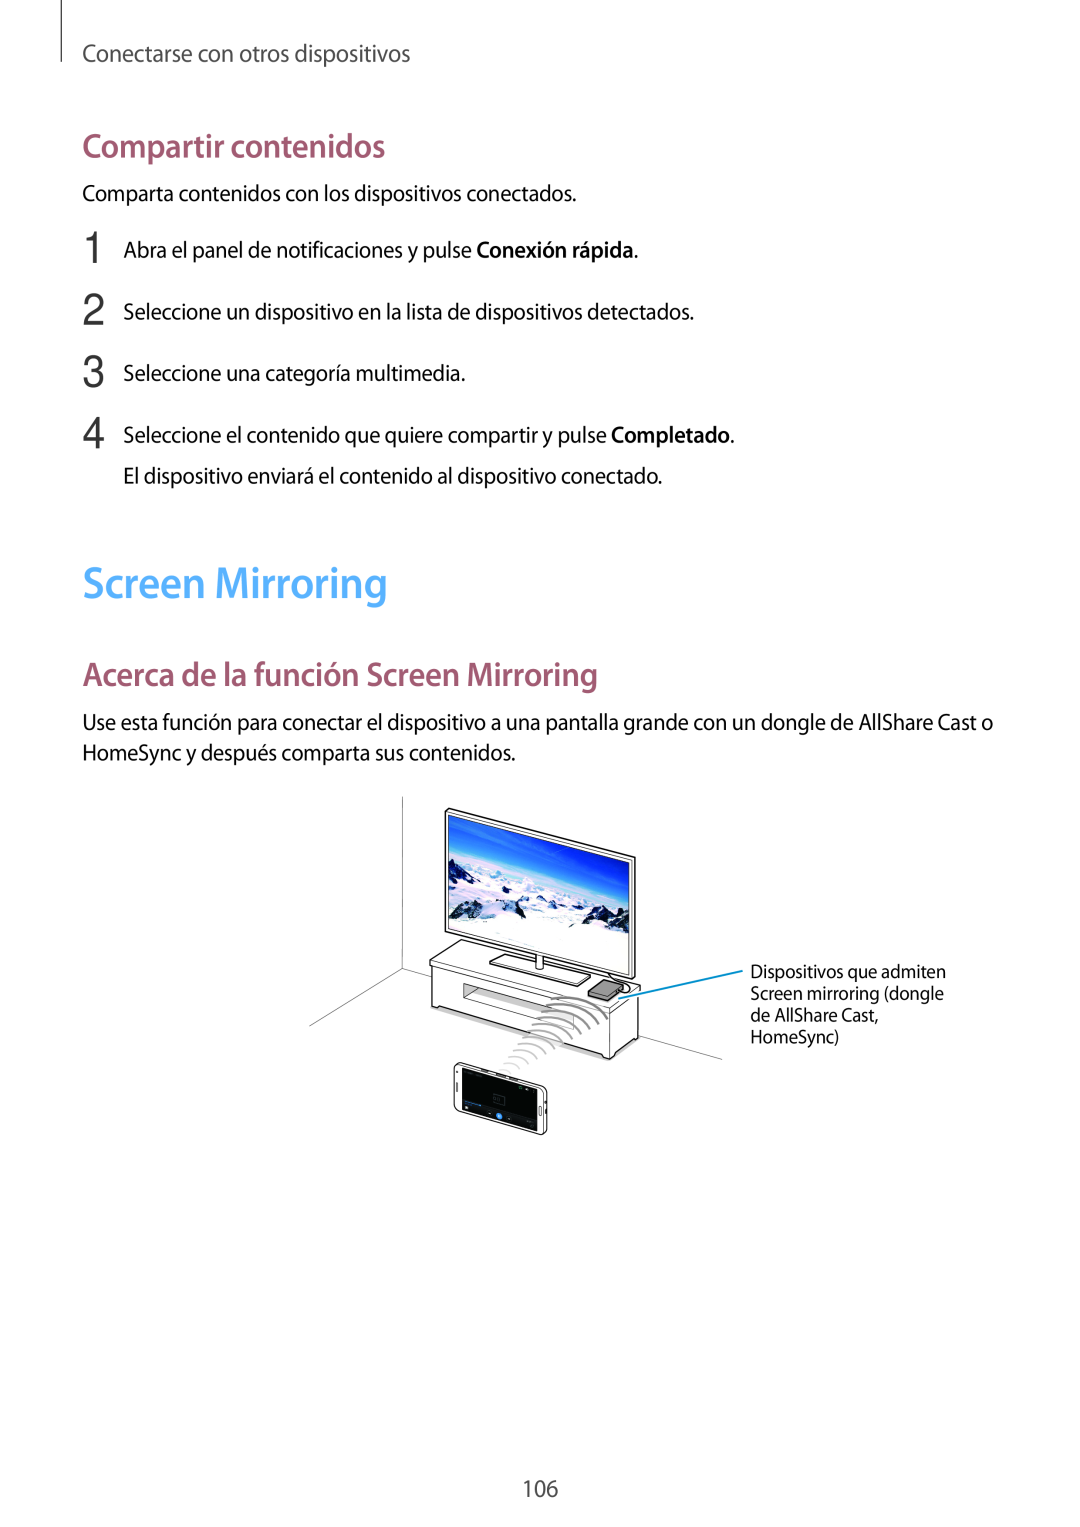 Samsung SM-A500FZSUPHE Compartir contenidos, Acerca de la función Screen Mirroring, Conectarse con otros dispositivos 